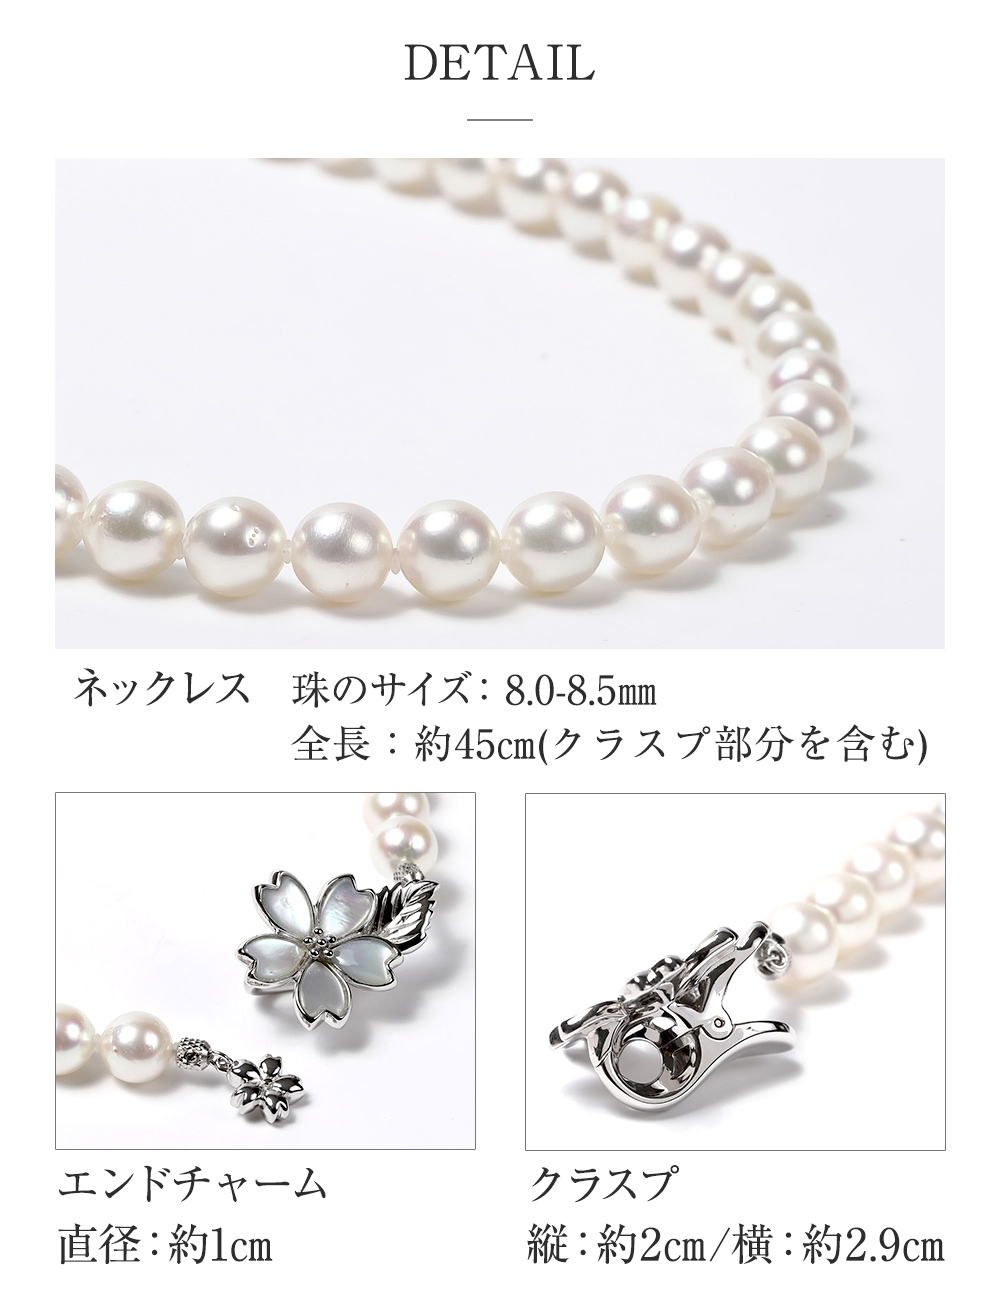 お買得 ✨新品 アコヤ真珠 パールネックレス 8.6ミリ珠 ピンク